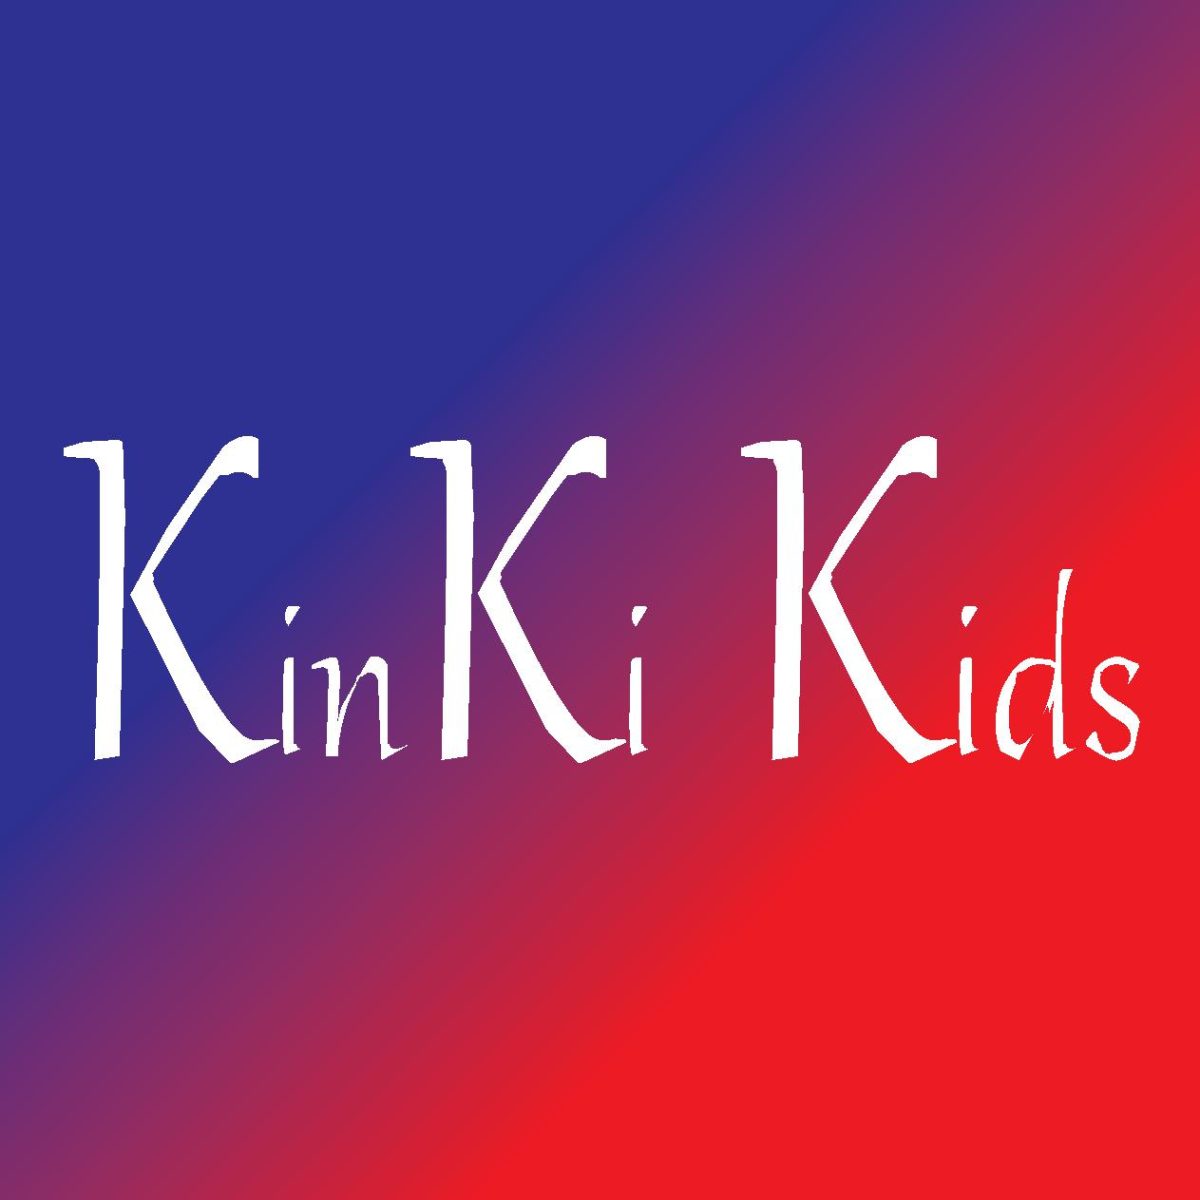 KinKi Kids・堂本剛 「初YouTube」で天竺鼠・川原克己が尋ねた「どうなの?郵便局は行っているの?」